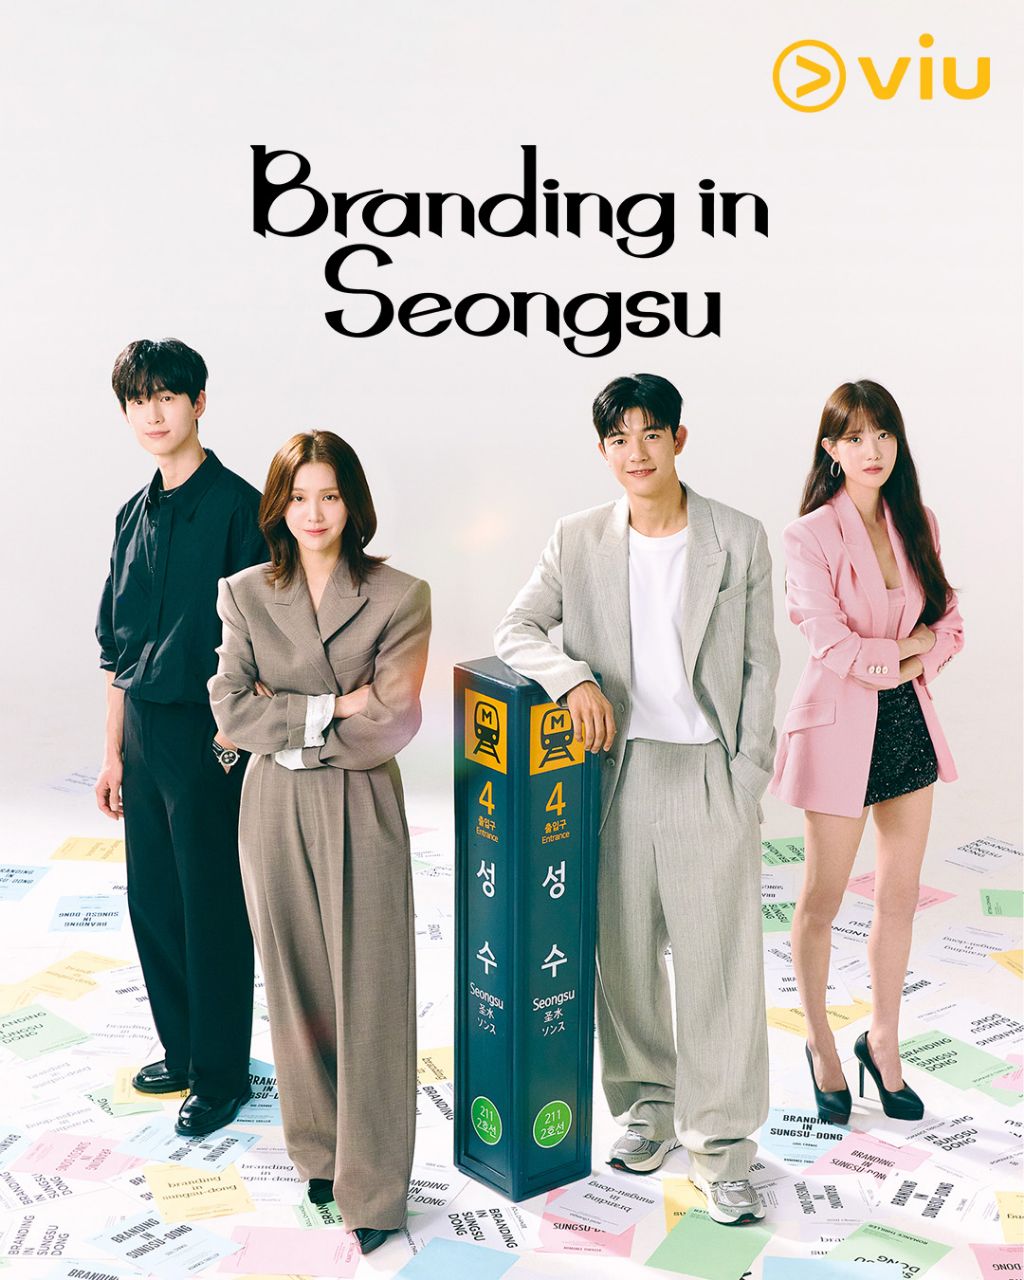 مسلسل العلامة التجارية في سيونغسو Branding in Seongsu الحلقة 8